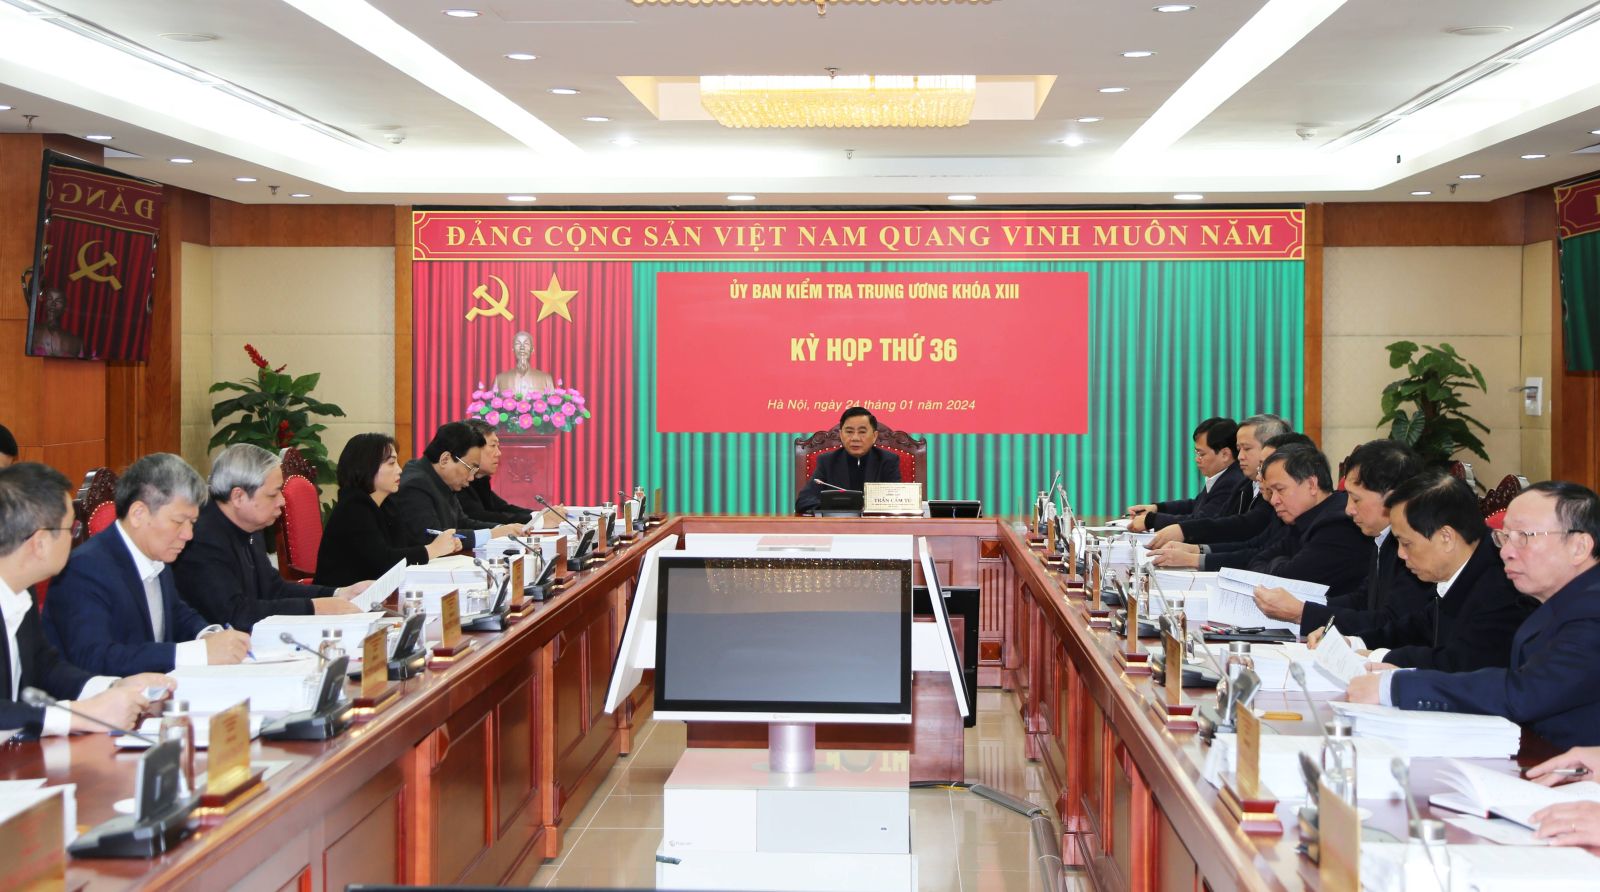 Đề nghị Bộ Chính trị kỷ luật nguyên Bí thư Bắc Ninh Nguyễn Nhân Chiến, kỷ luật khiển trách Chủ tịch UBND tỉnh- Ảnh 1.